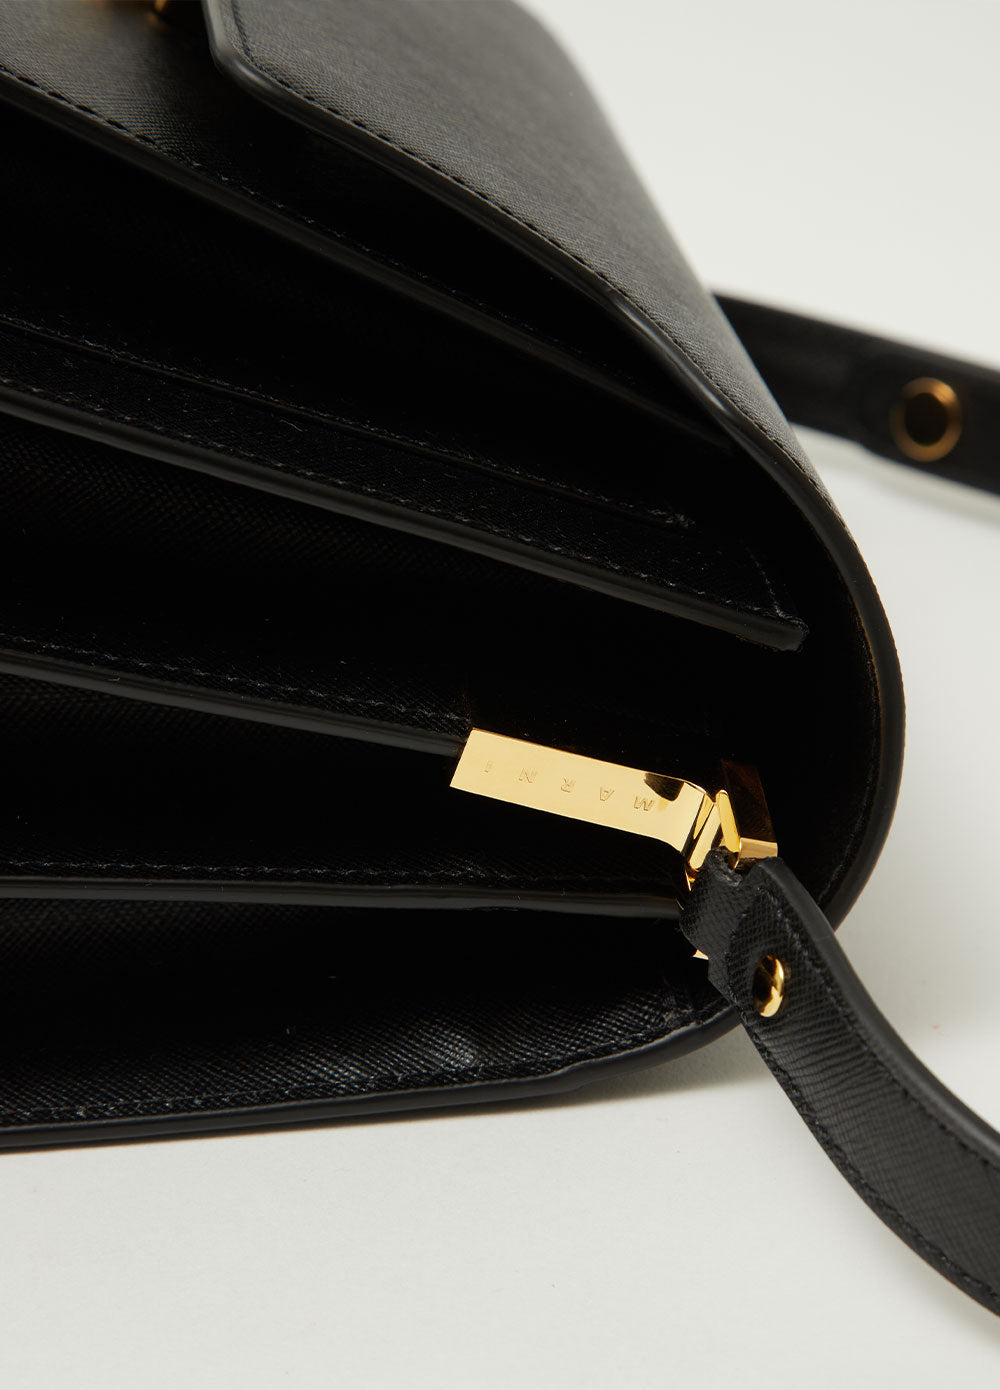 Marni Nano Trunk Leather Shoulder Bag